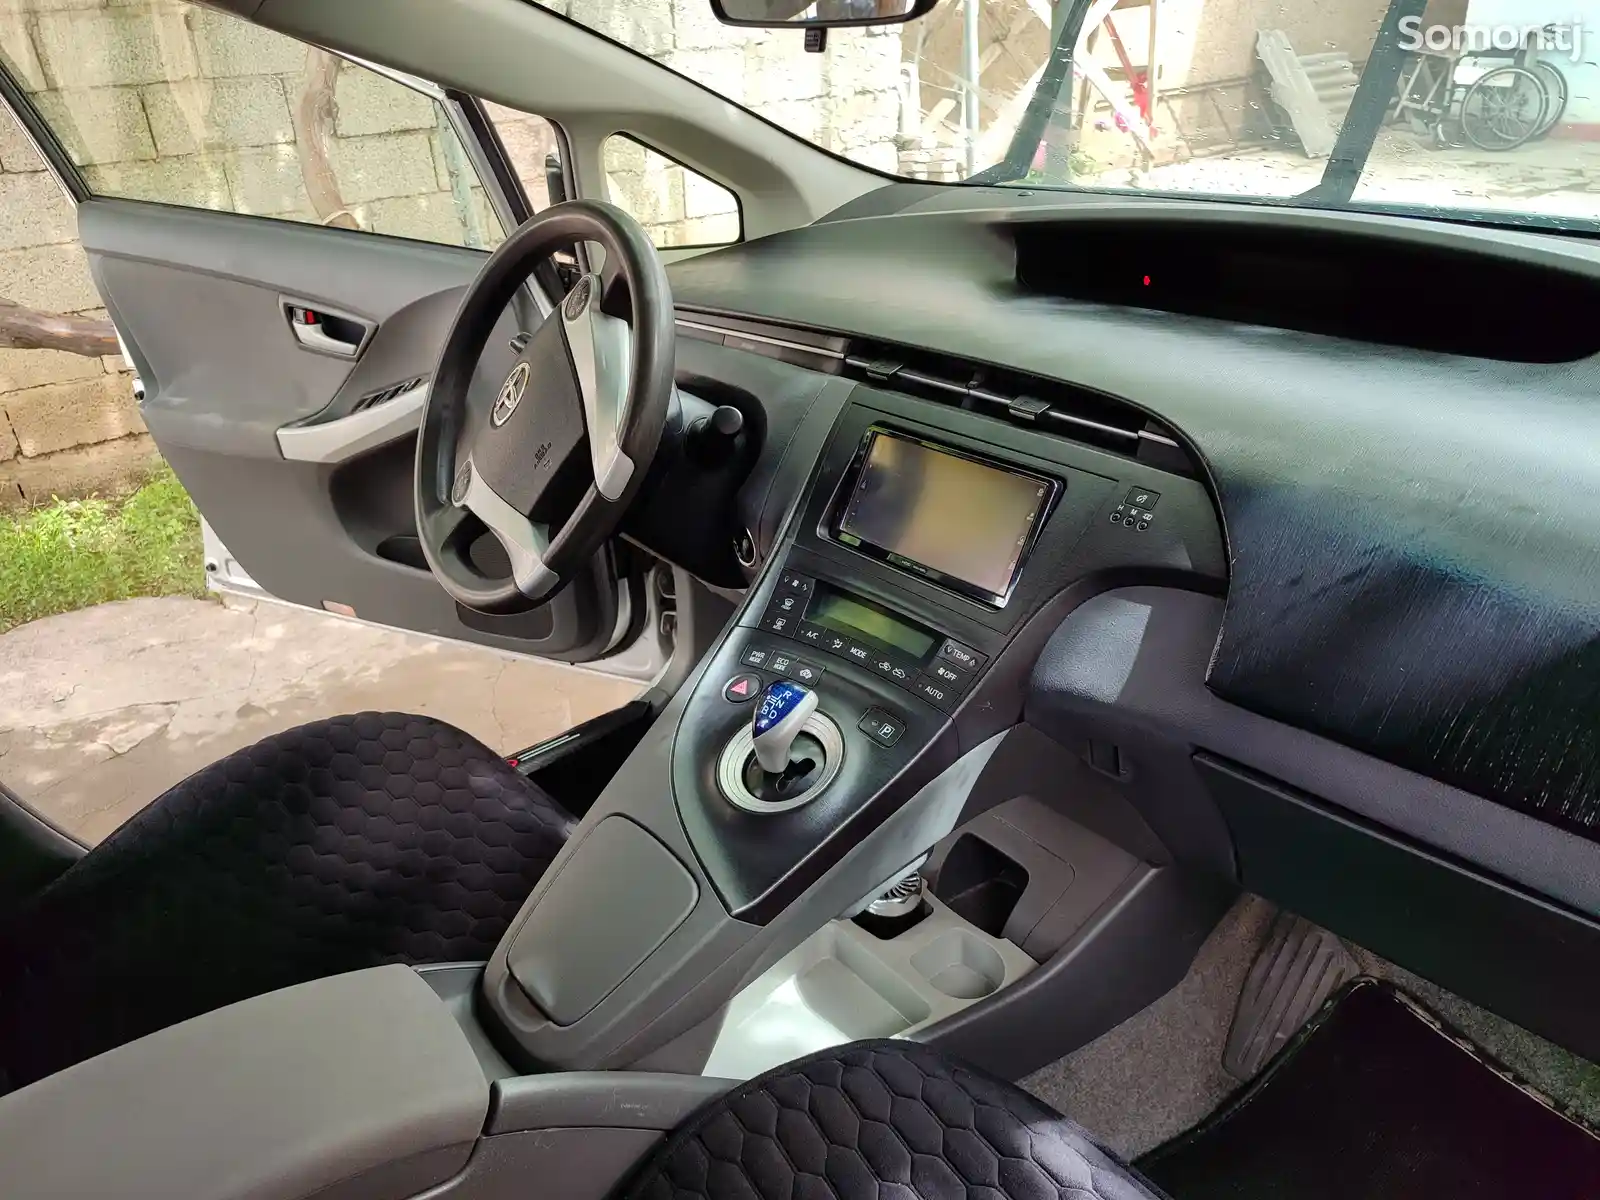 Toyota Prius, 2009-10